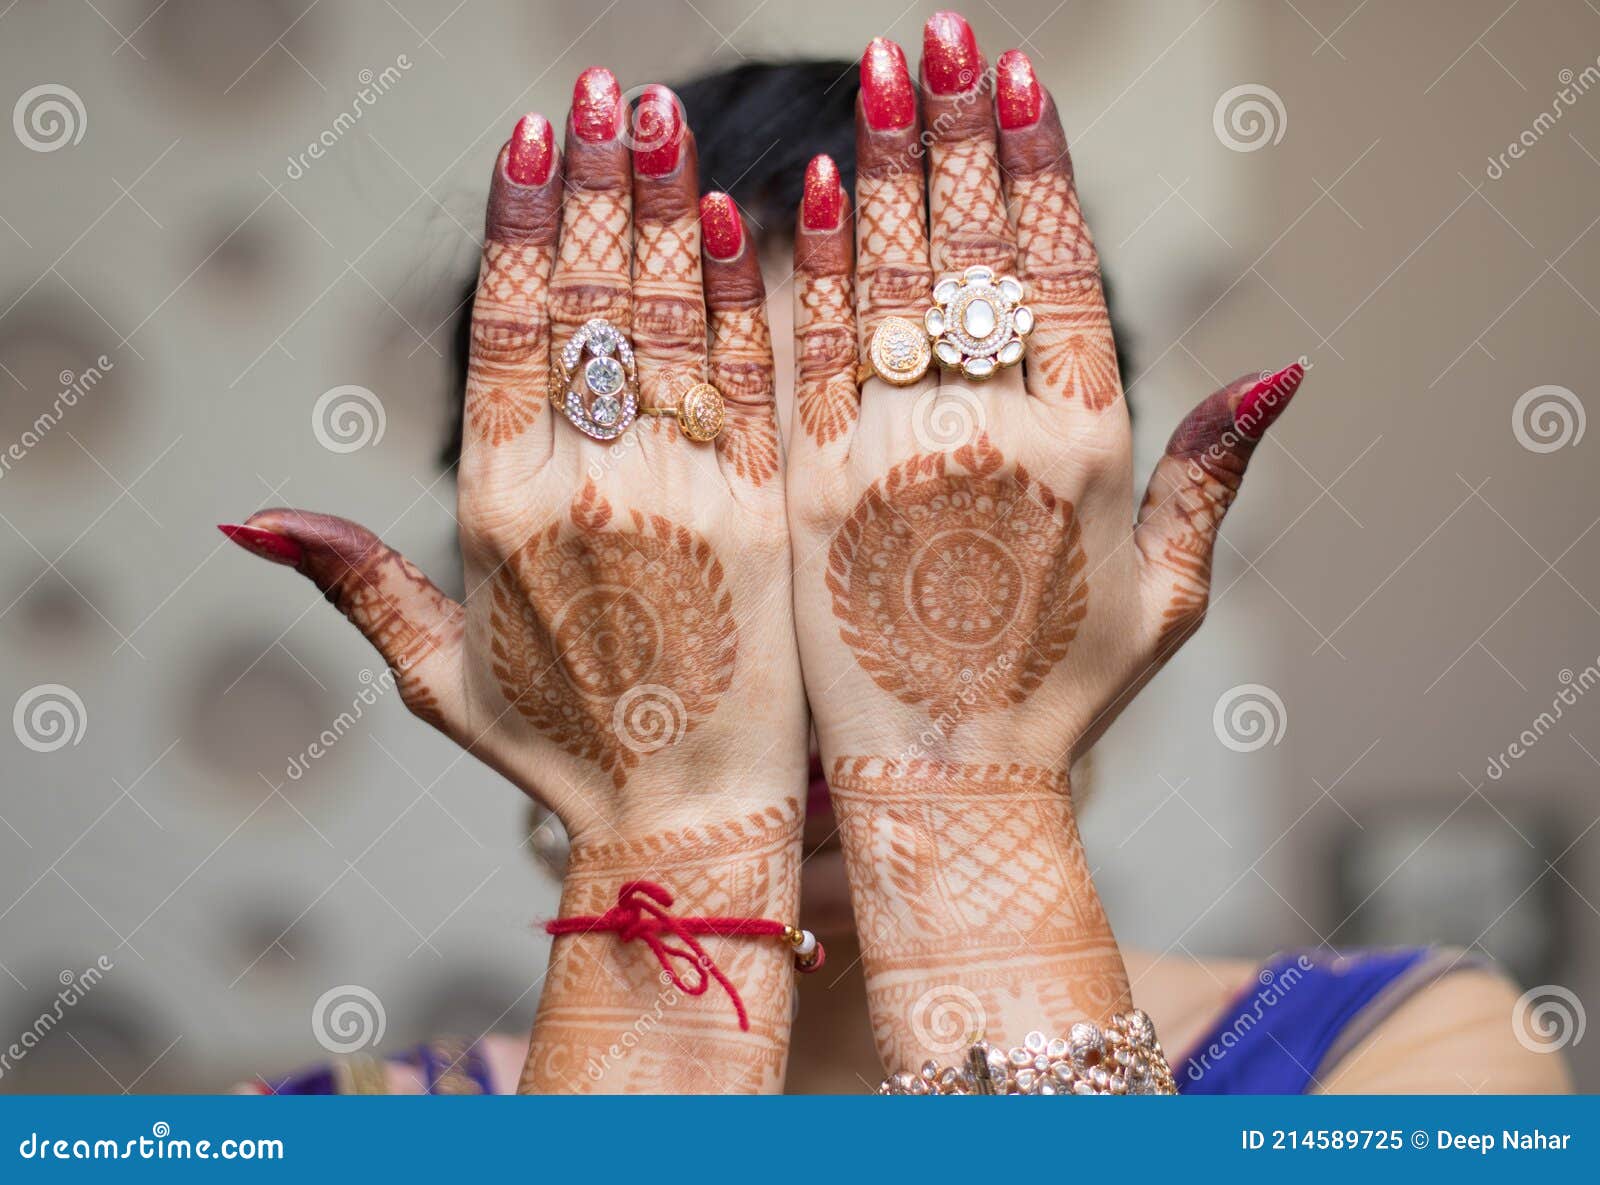 Simple Easy Bracelet Henna Design On Stock Photo 1712095129 | Shutterstock